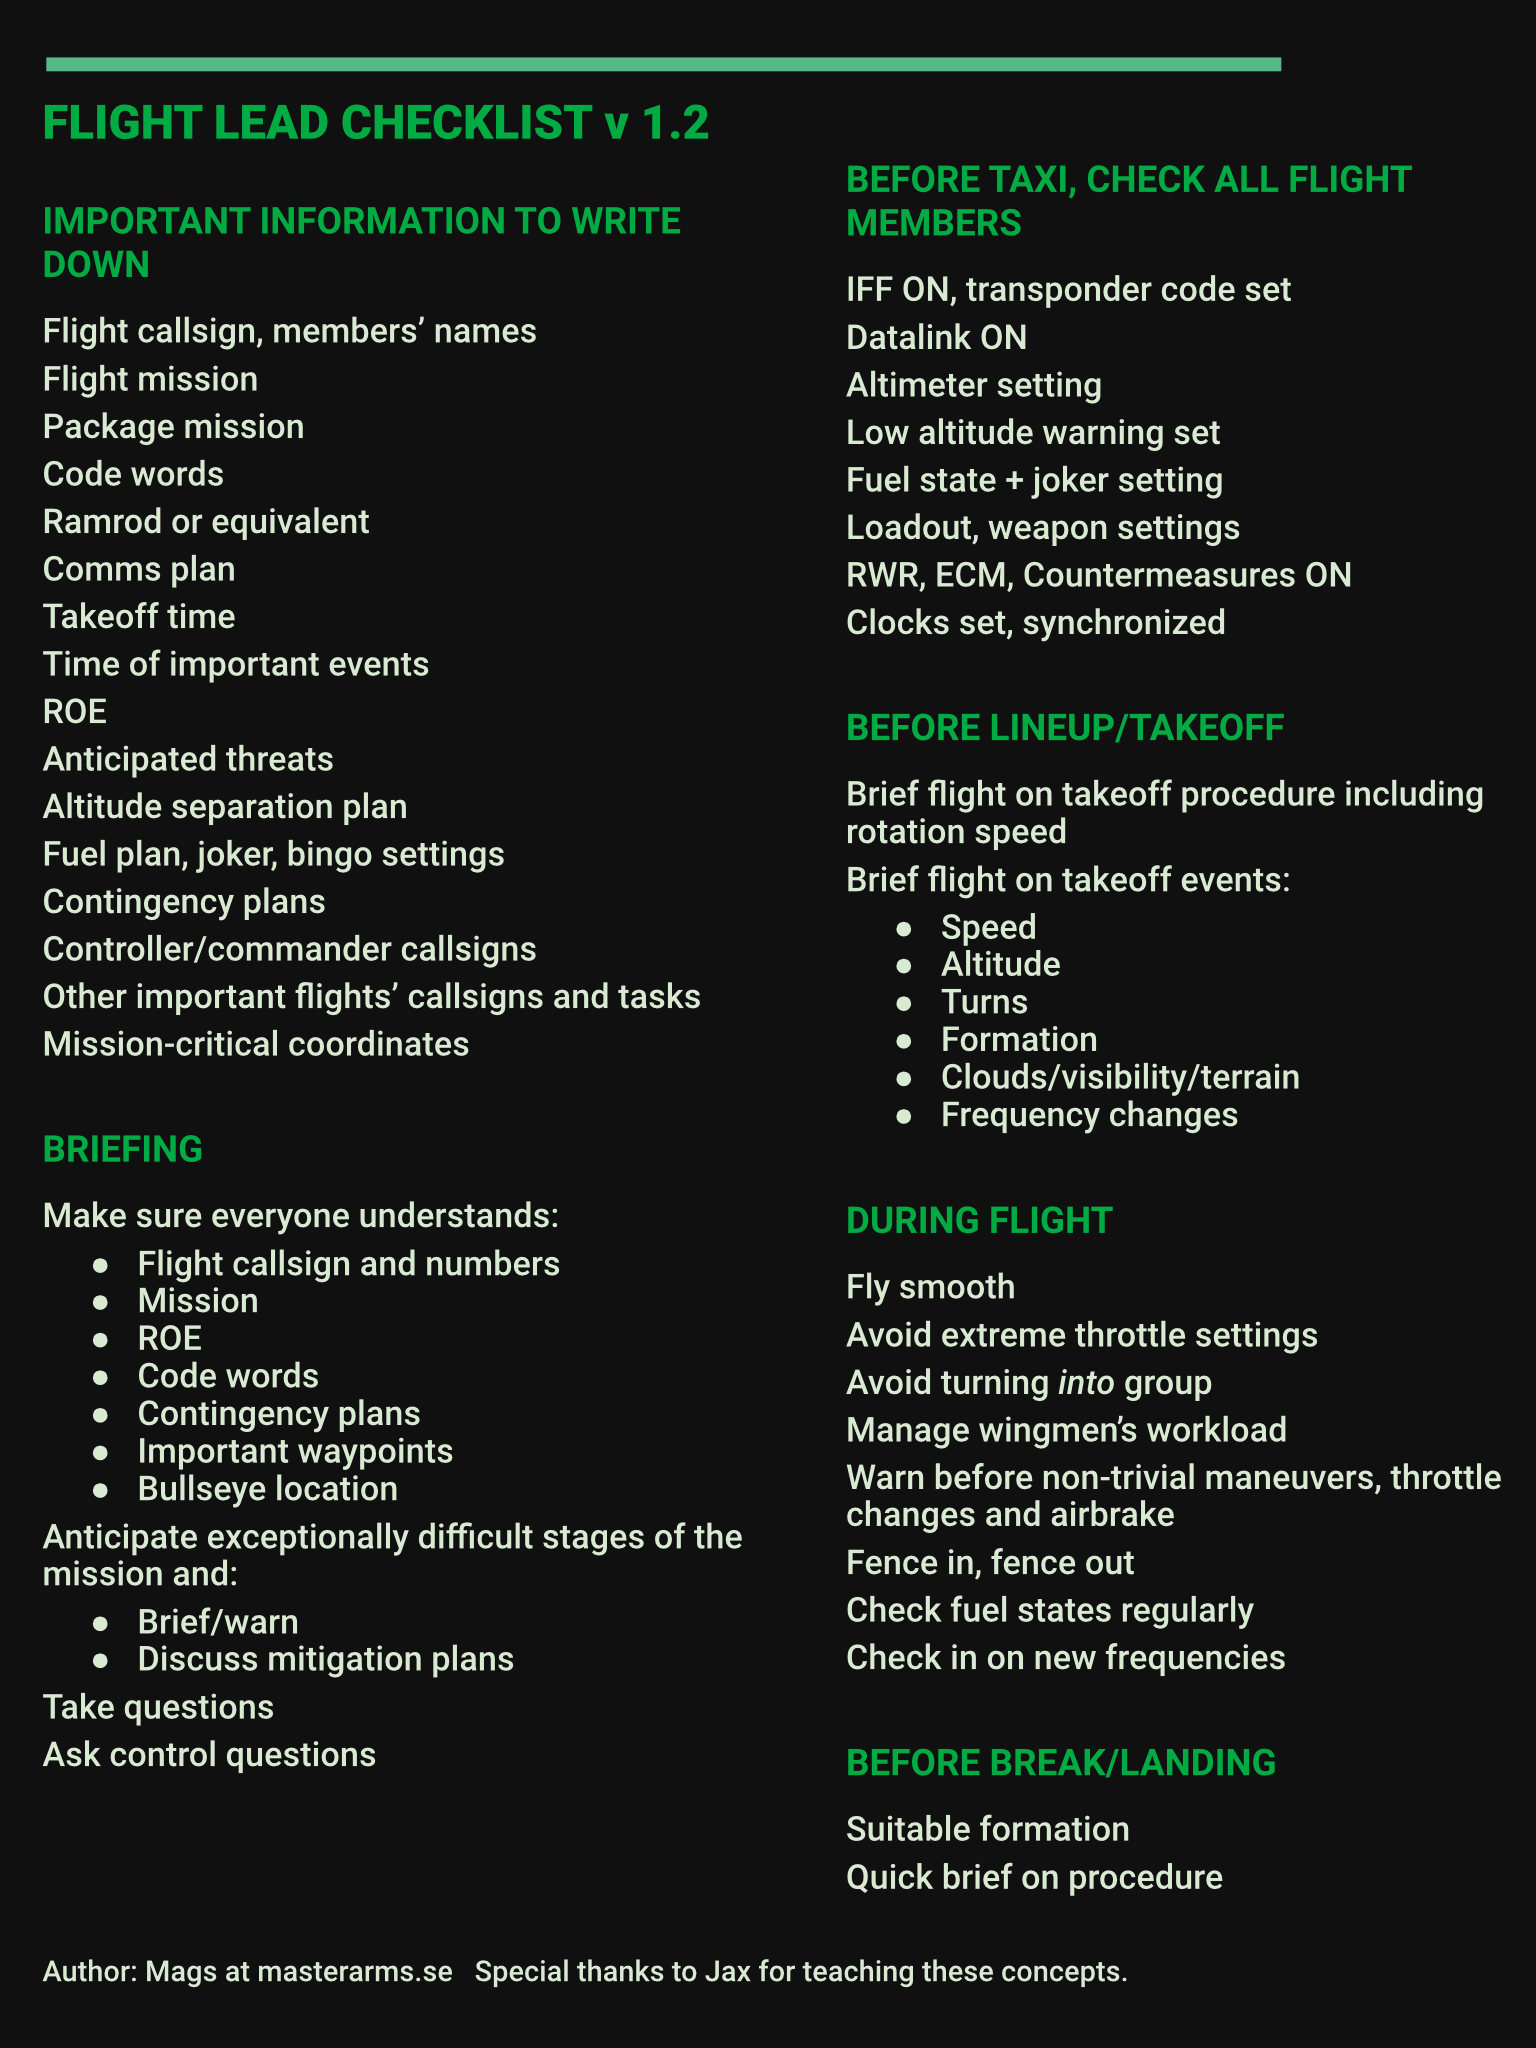 Flight Lead Checklist kneeboard for modern fighters